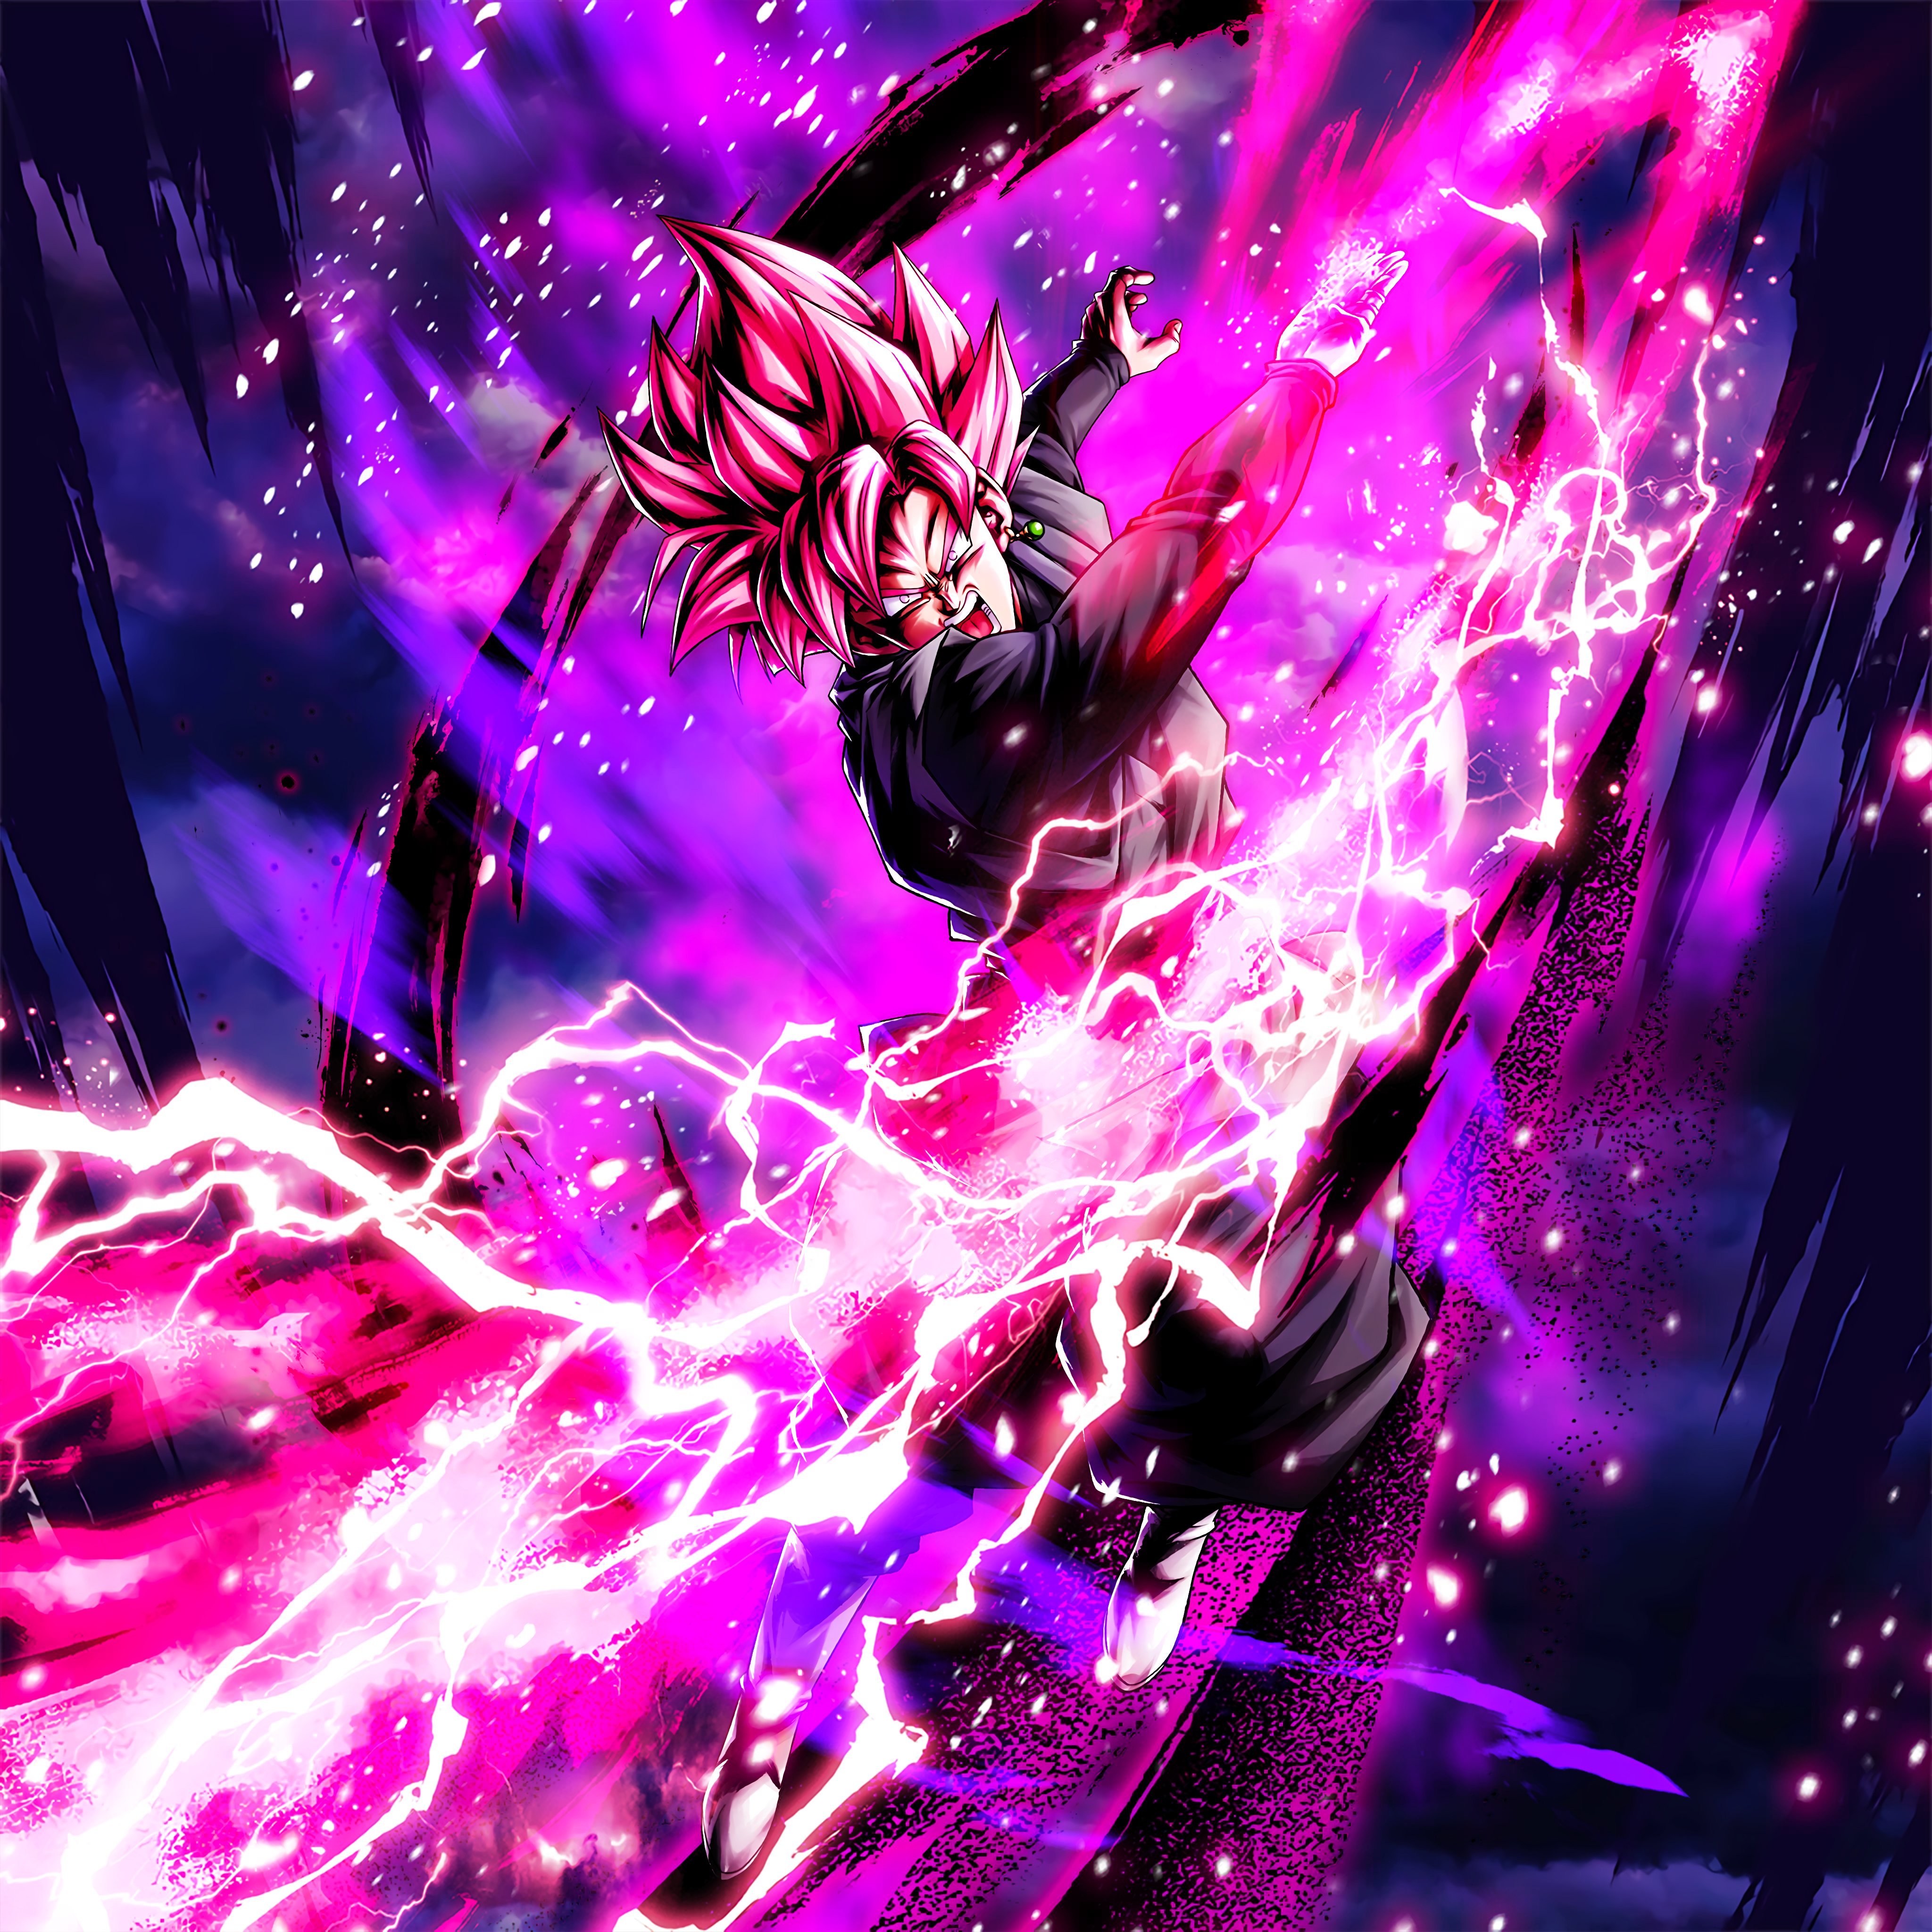 Super Saiyan Rose  Goku Black  DBZ 4K Quality Download  Live Desktop  Wallpapers